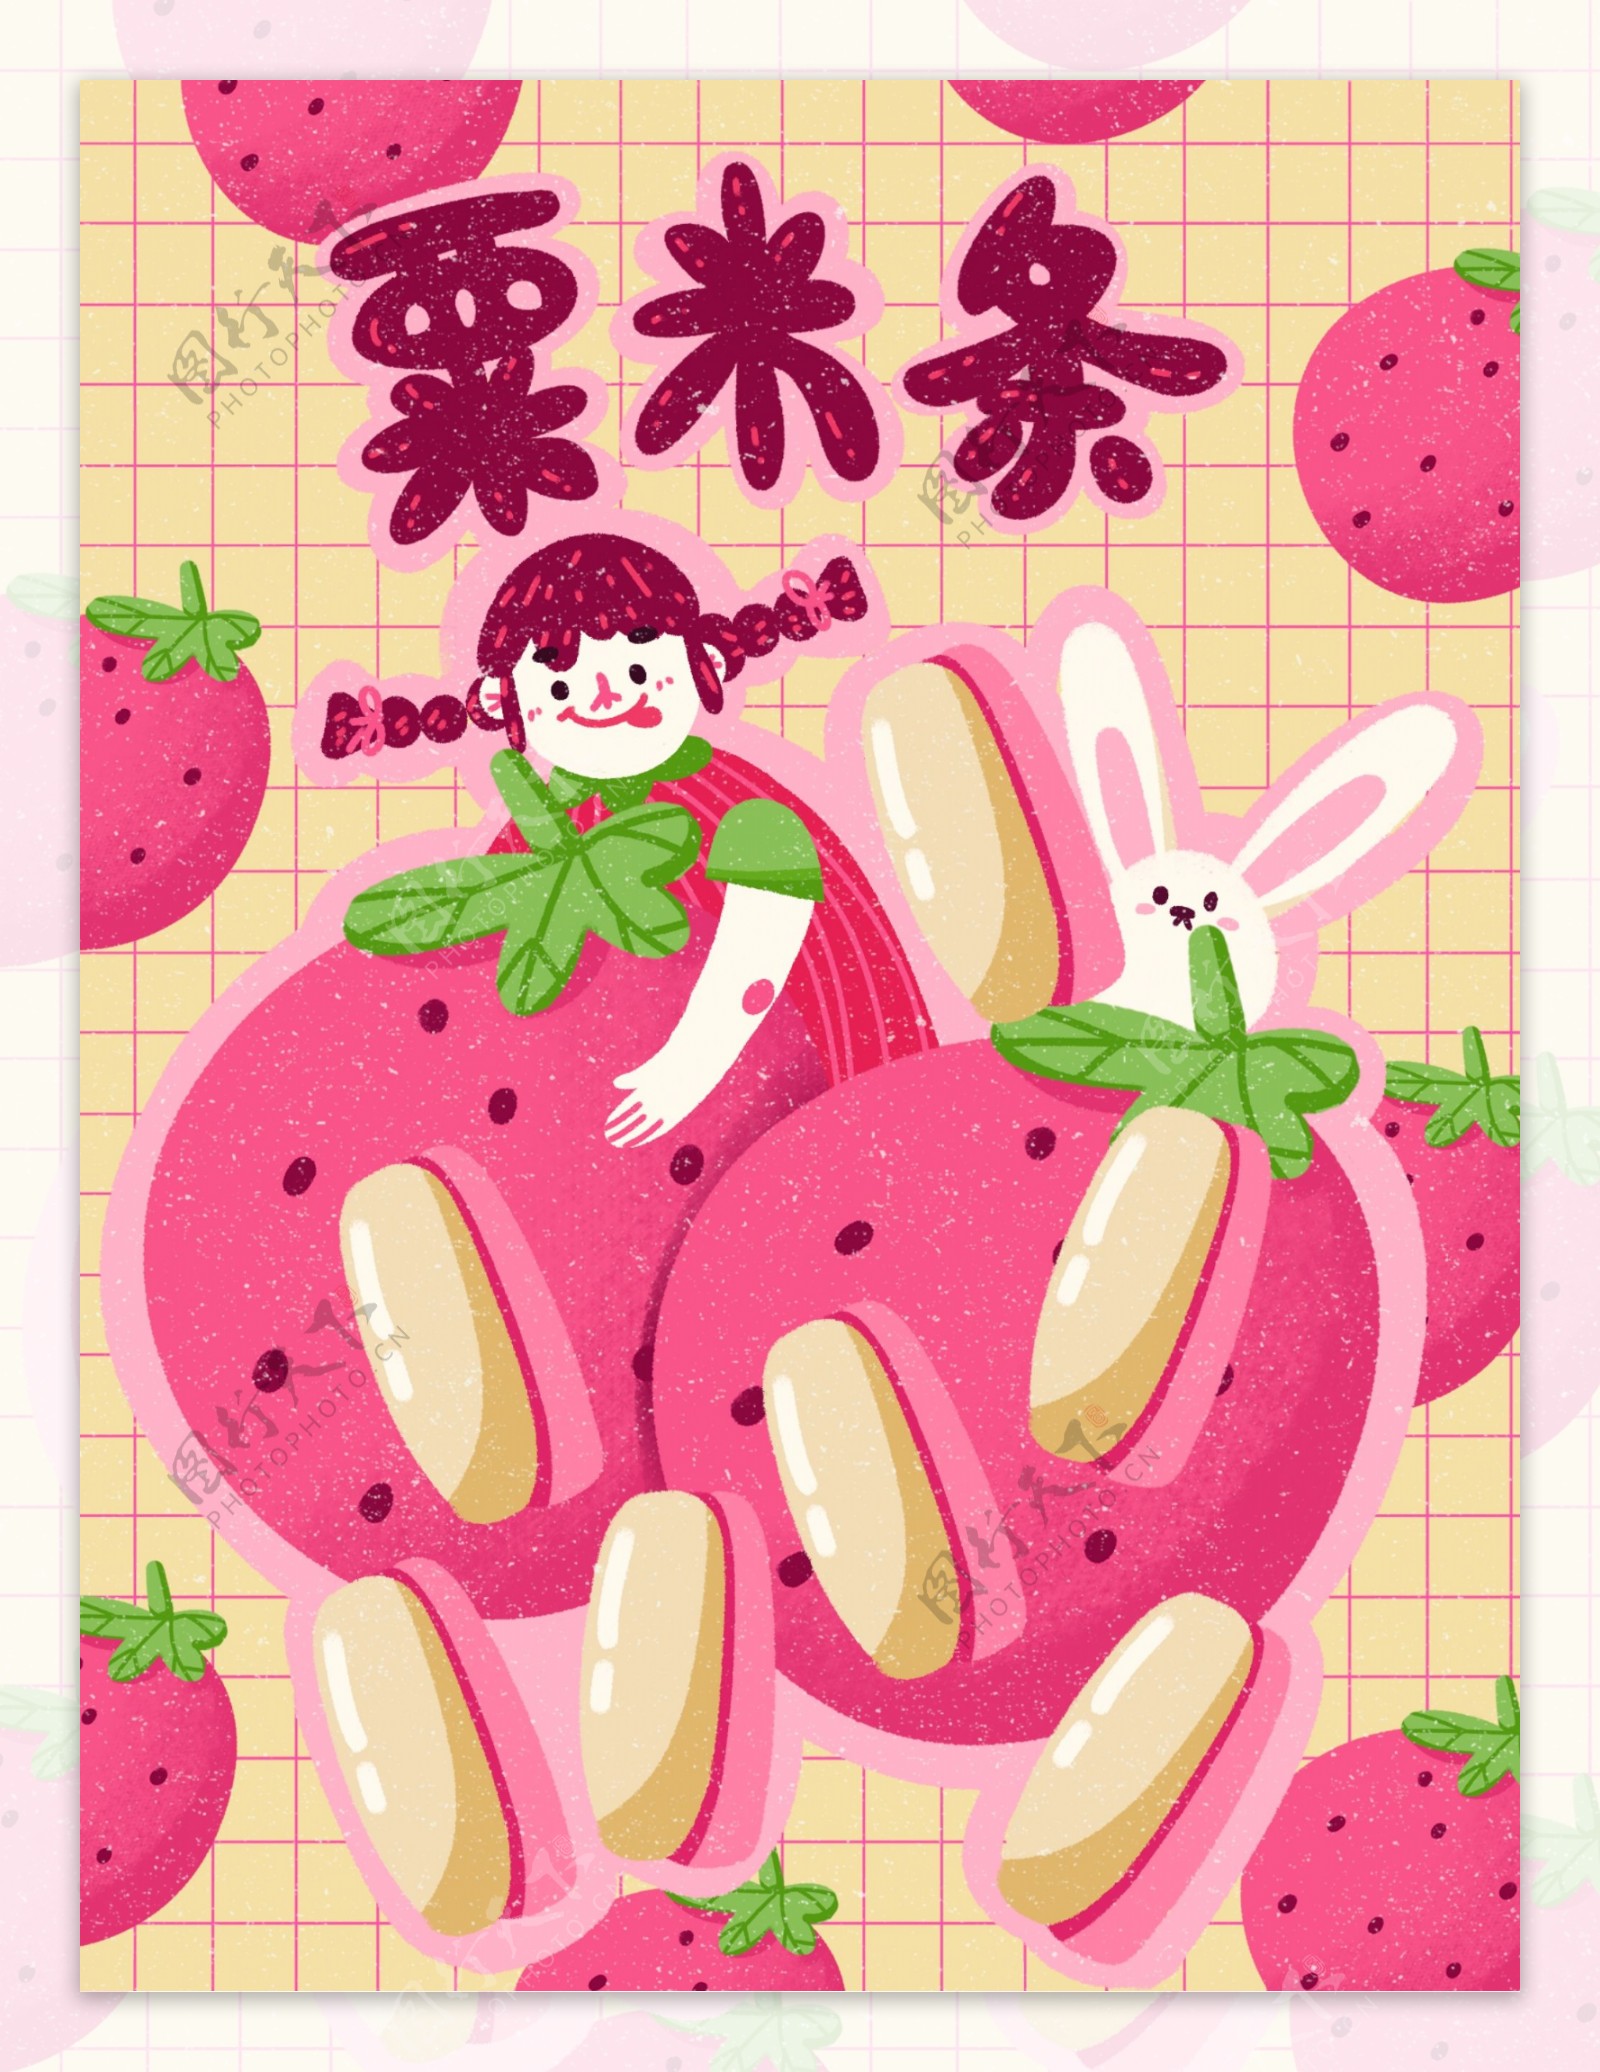 膨化食品栗米条草莓水果味创意薯条插画包装